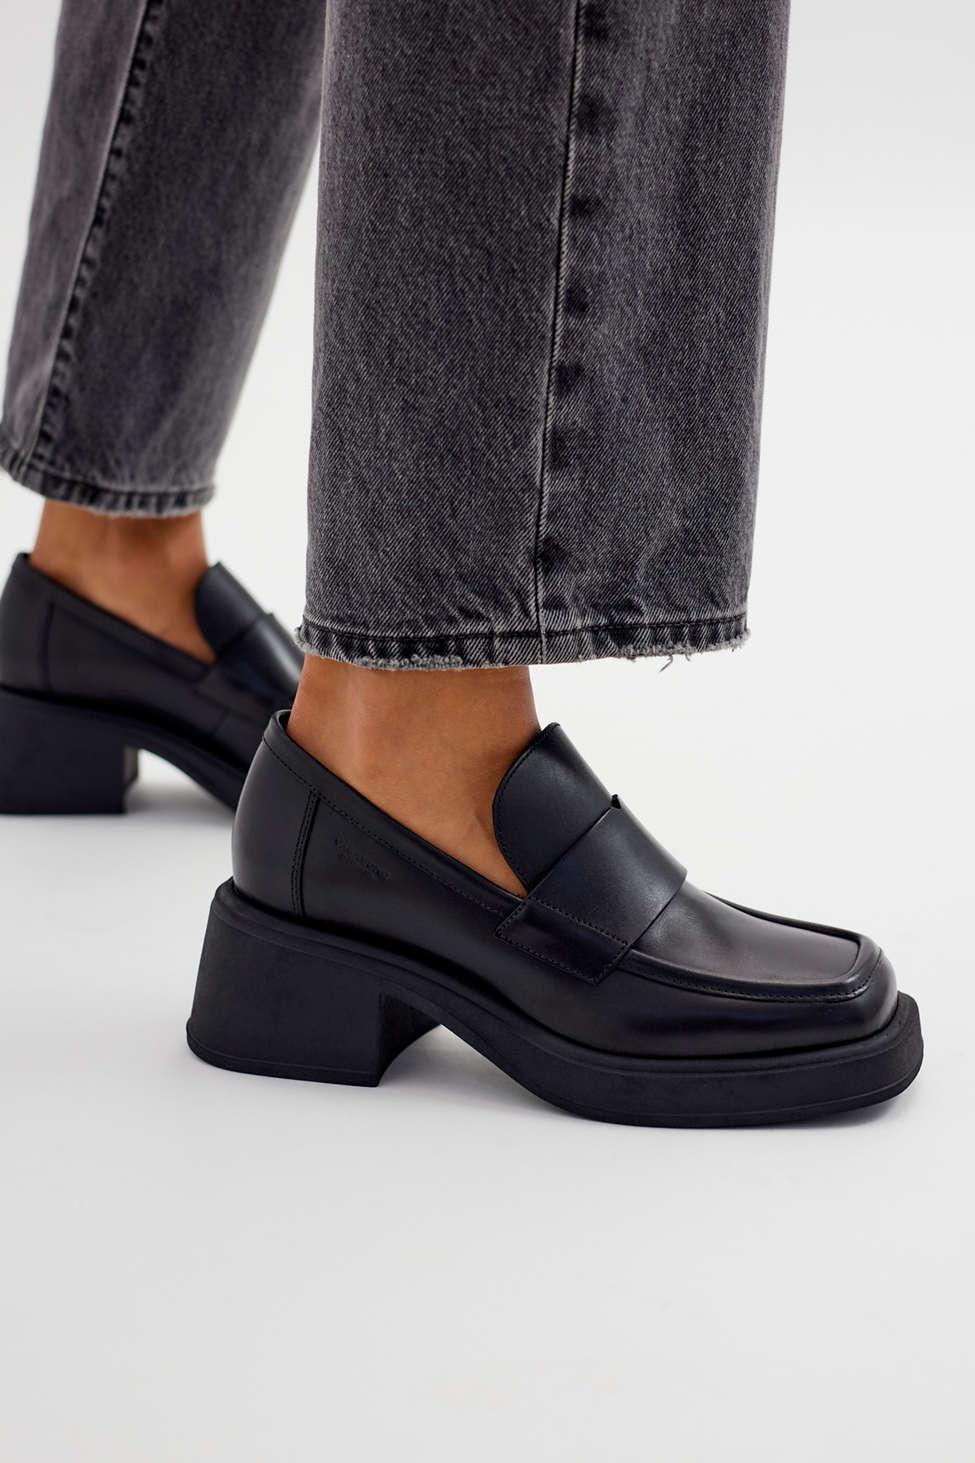 Vagabond Shoemakers Dorah Heeled Loafer in Black | Lyst